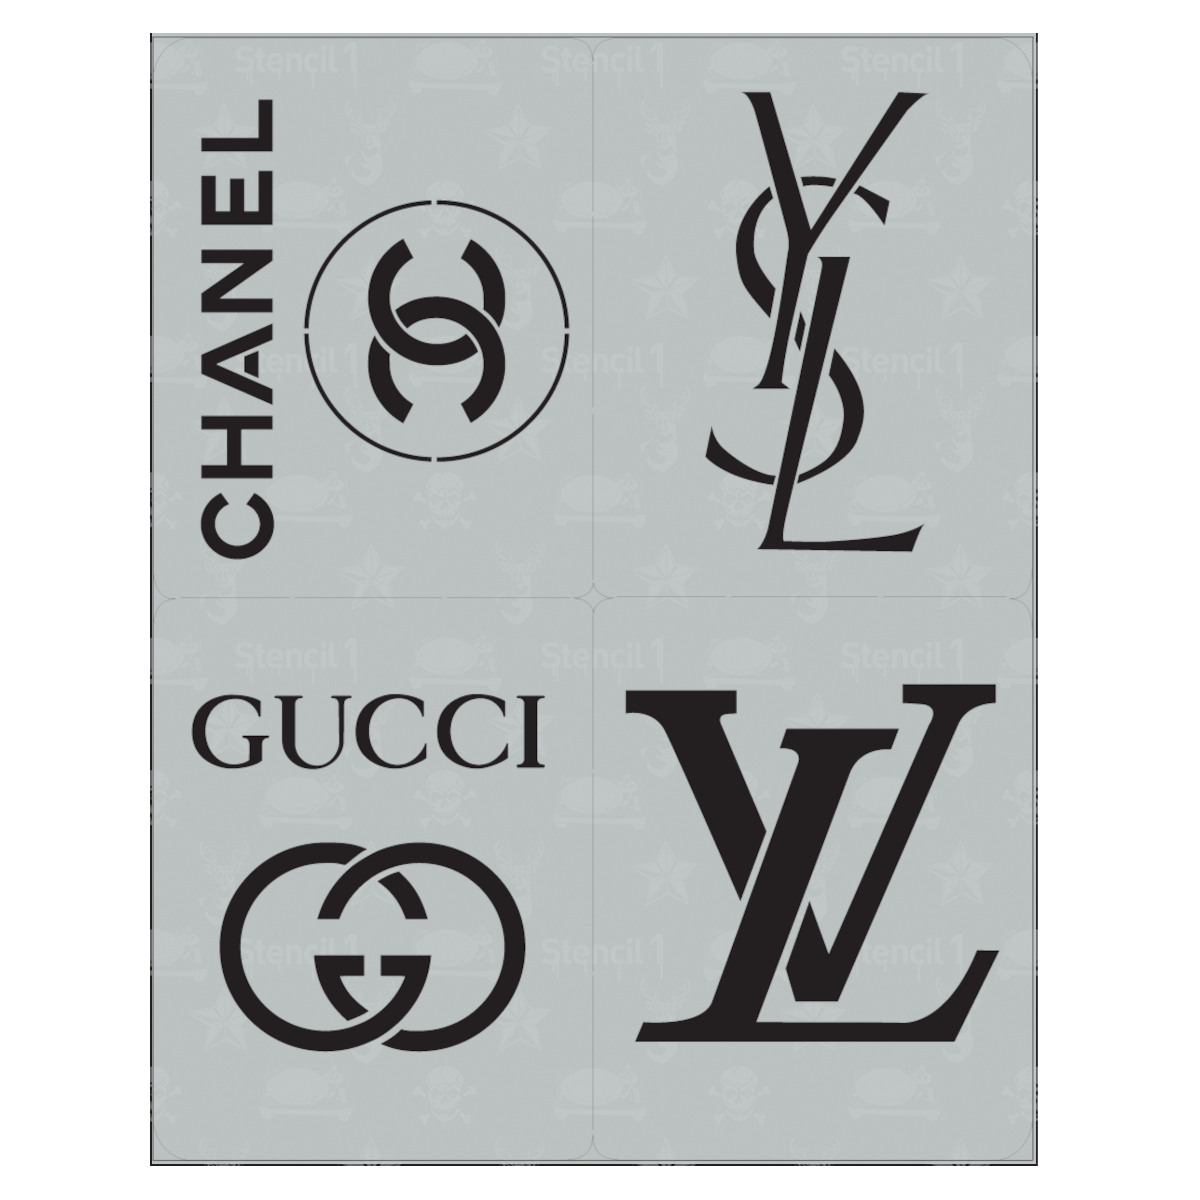 Stencil logo, Free stencils, Louis vuitton pattern